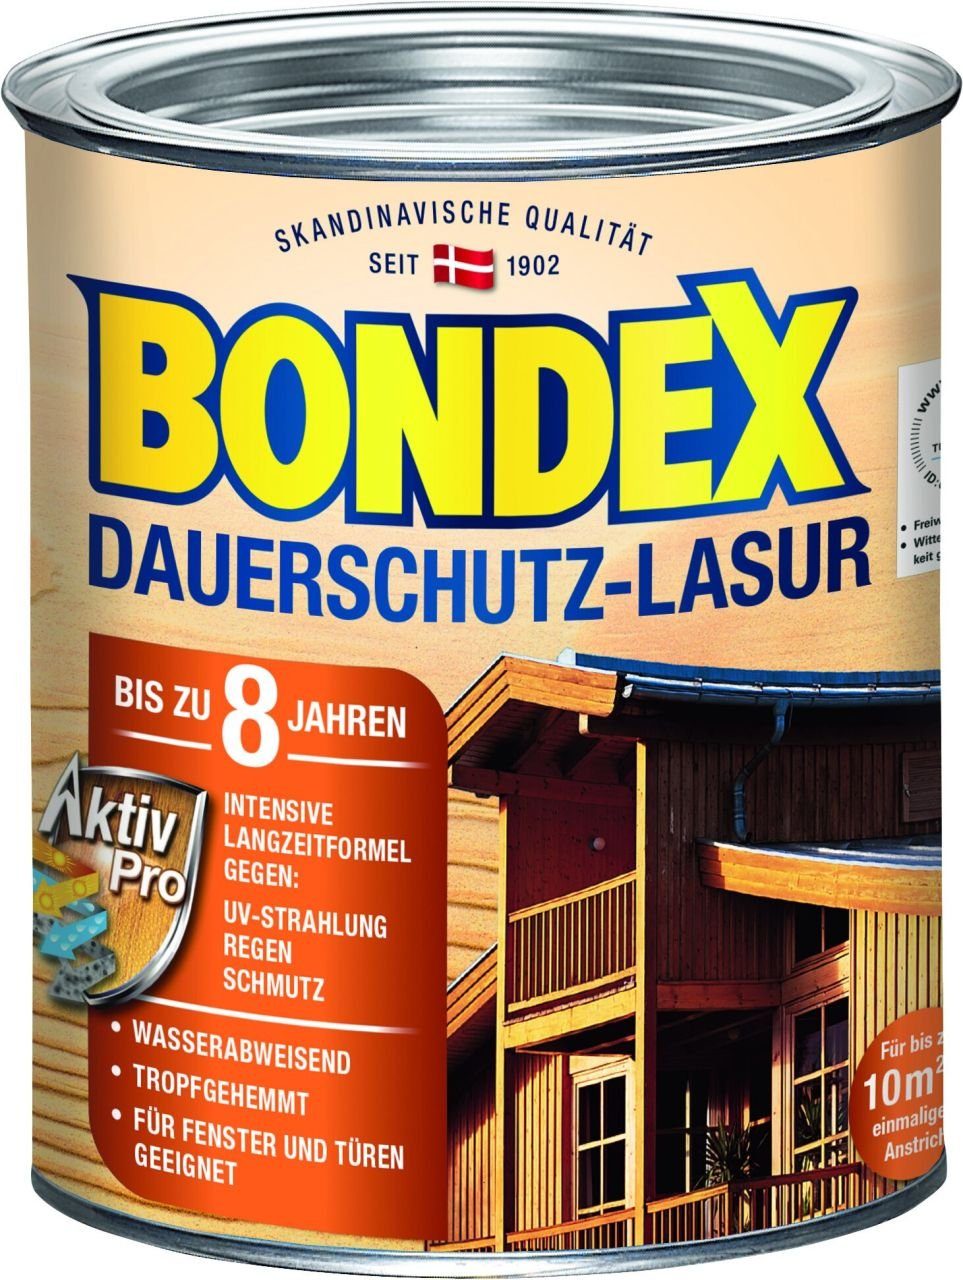 Bondex 750 ml ebenholz Dauerschutz Bondex Lasur Lasur